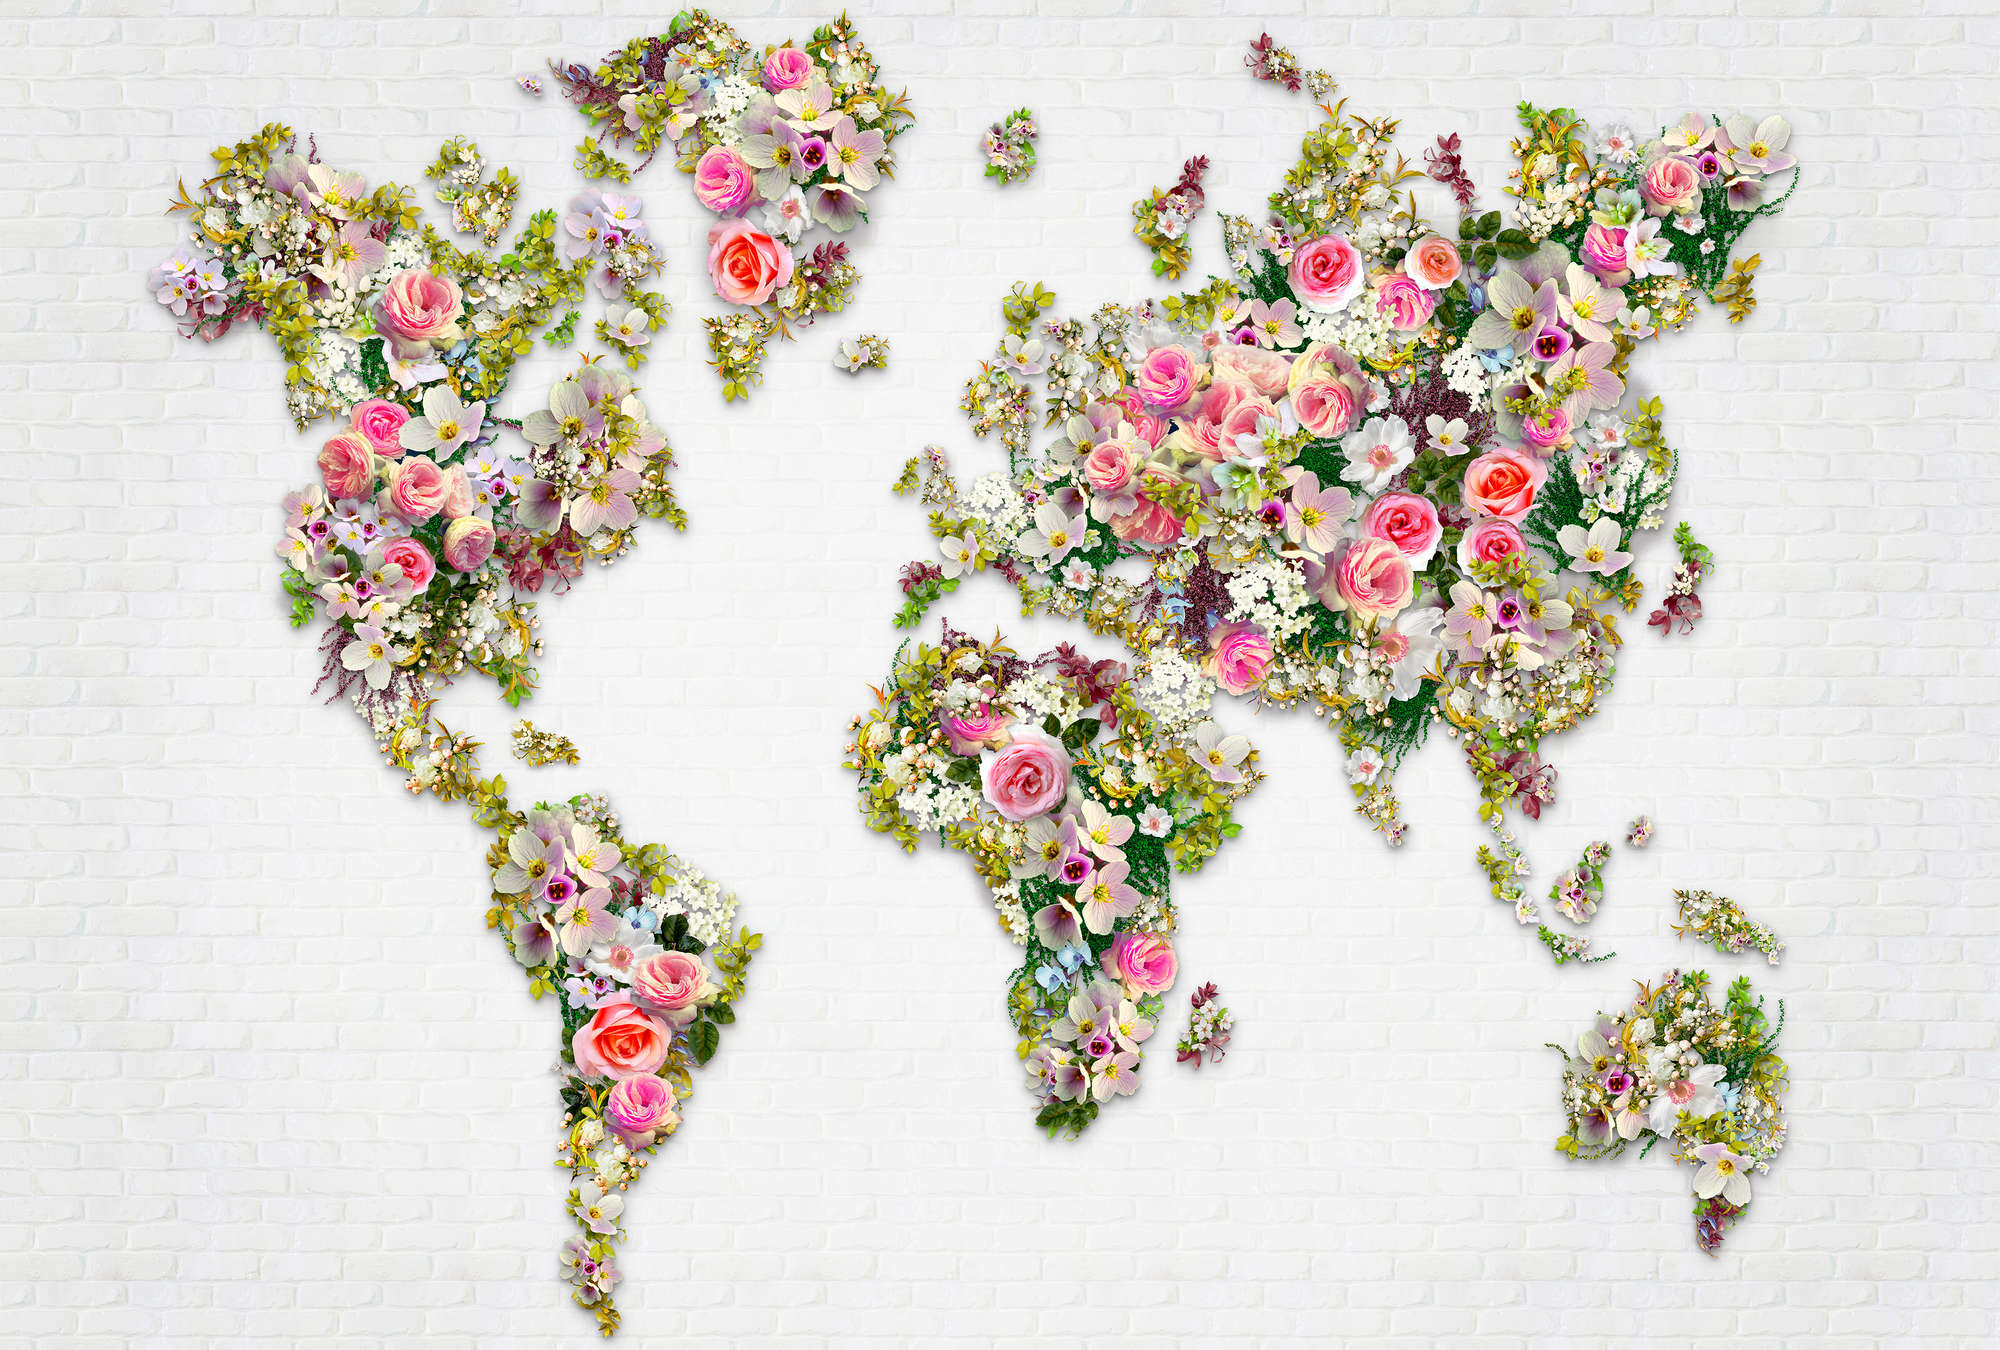             Il murale Roses & Blossoms come mappa del mondo su una parete bianca
        